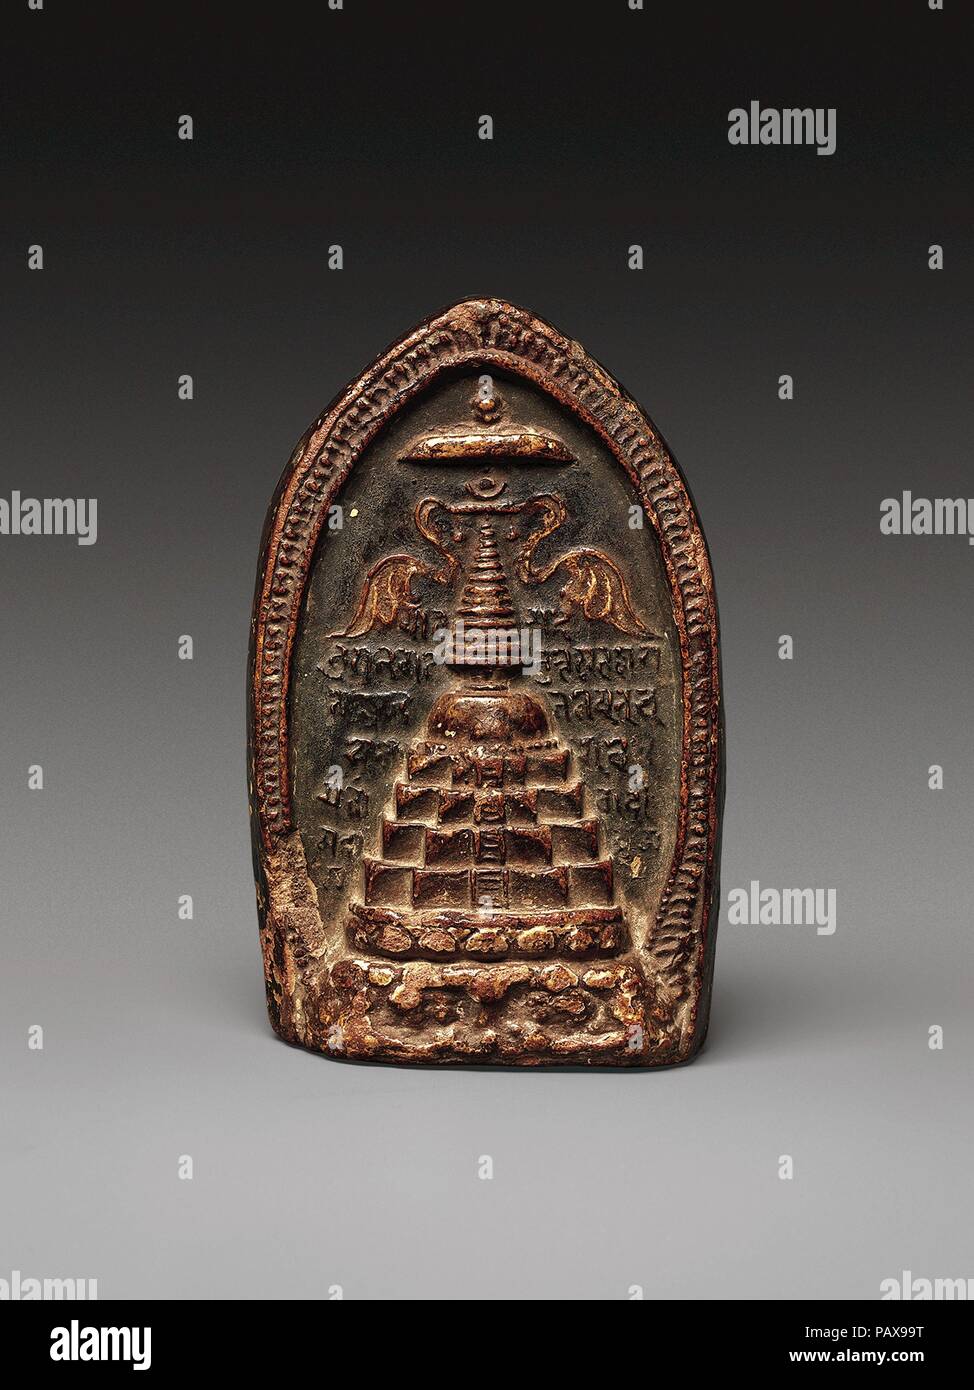 Plaque votive (TSA-Tsa) représentant un stupa. Culture : le Tibet. Dimensions : H. 4 1/8 in. (10,5 cm) ; W. 2 5/8 in. (6,7 cm) ; D. 1 3/8 in. (3,5 cm). Date : 10ème-11ème siècle. Cette tablette d'argile moulée conserve une image d'un stupa de l'Inde du nord (monticule relique)--un type n'existe plus. Le stupa est couronné avec parasols et honorifique ornés de voler des bannières. Écrit en script Sharani dans l'arrière-plan est la croyance bouddhiste ye dharma, exposant les Quatre Nobles Vérités du Bouddha. Musée : Metropolitan Museum of Art, New York, USA. Banque D'Images